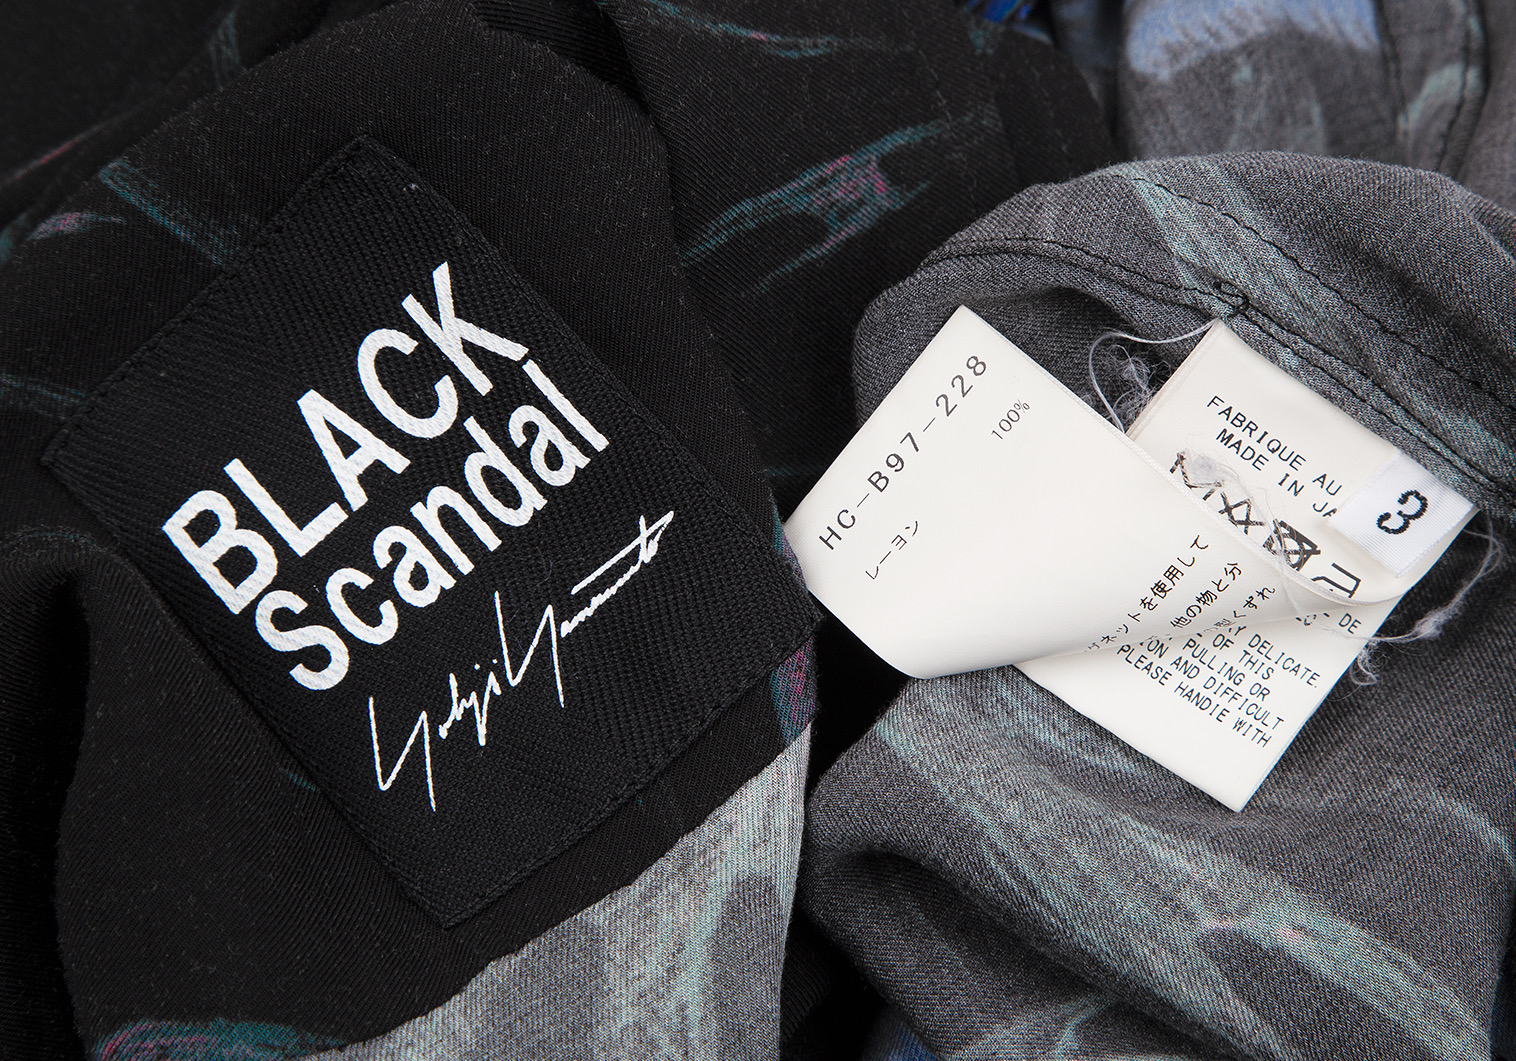 Yohji Yamamoto ロングシャツ サイズ3 黒 ブラック